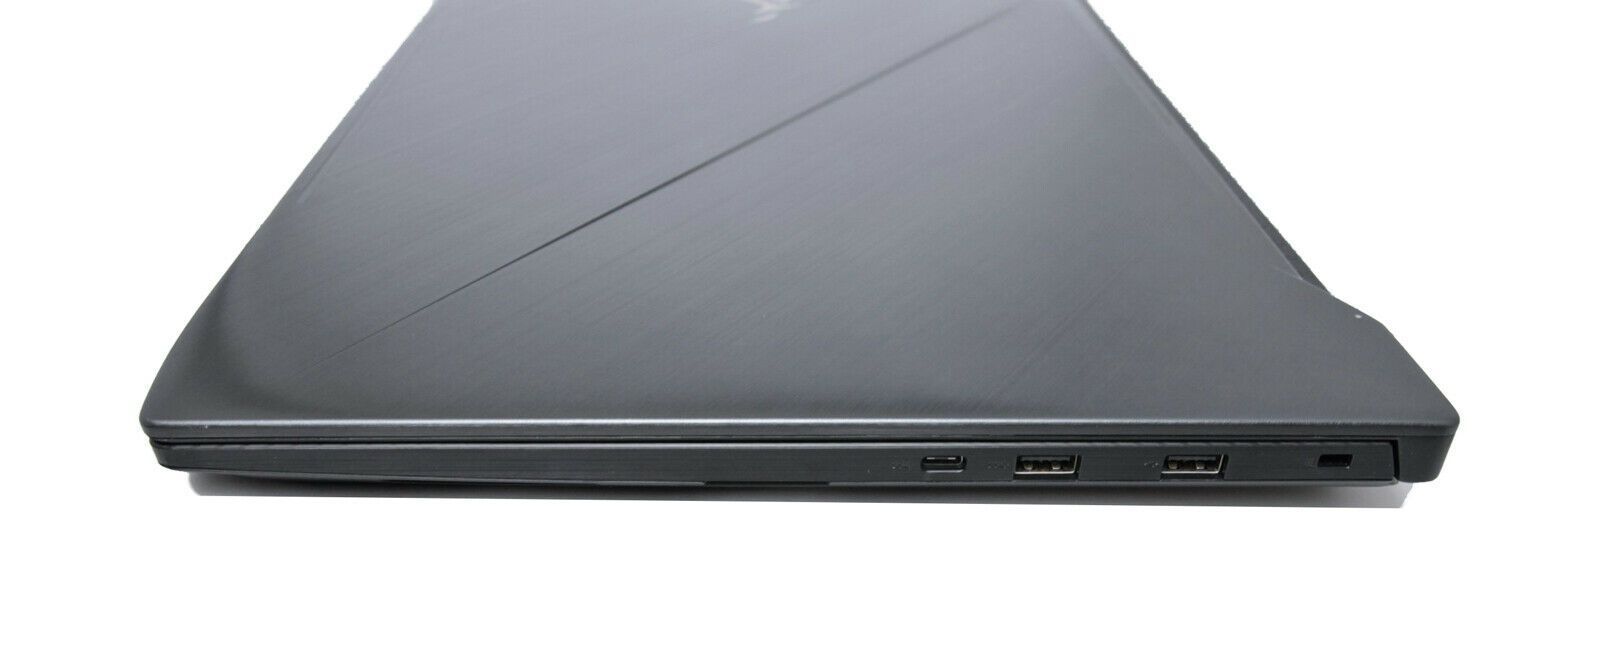 ASUS GL703VM 17" Gaming Laptop NVIDIA GTX 1060 Core i7-7700HQ 16GB RAM 256GB+1TB - CruiseTech